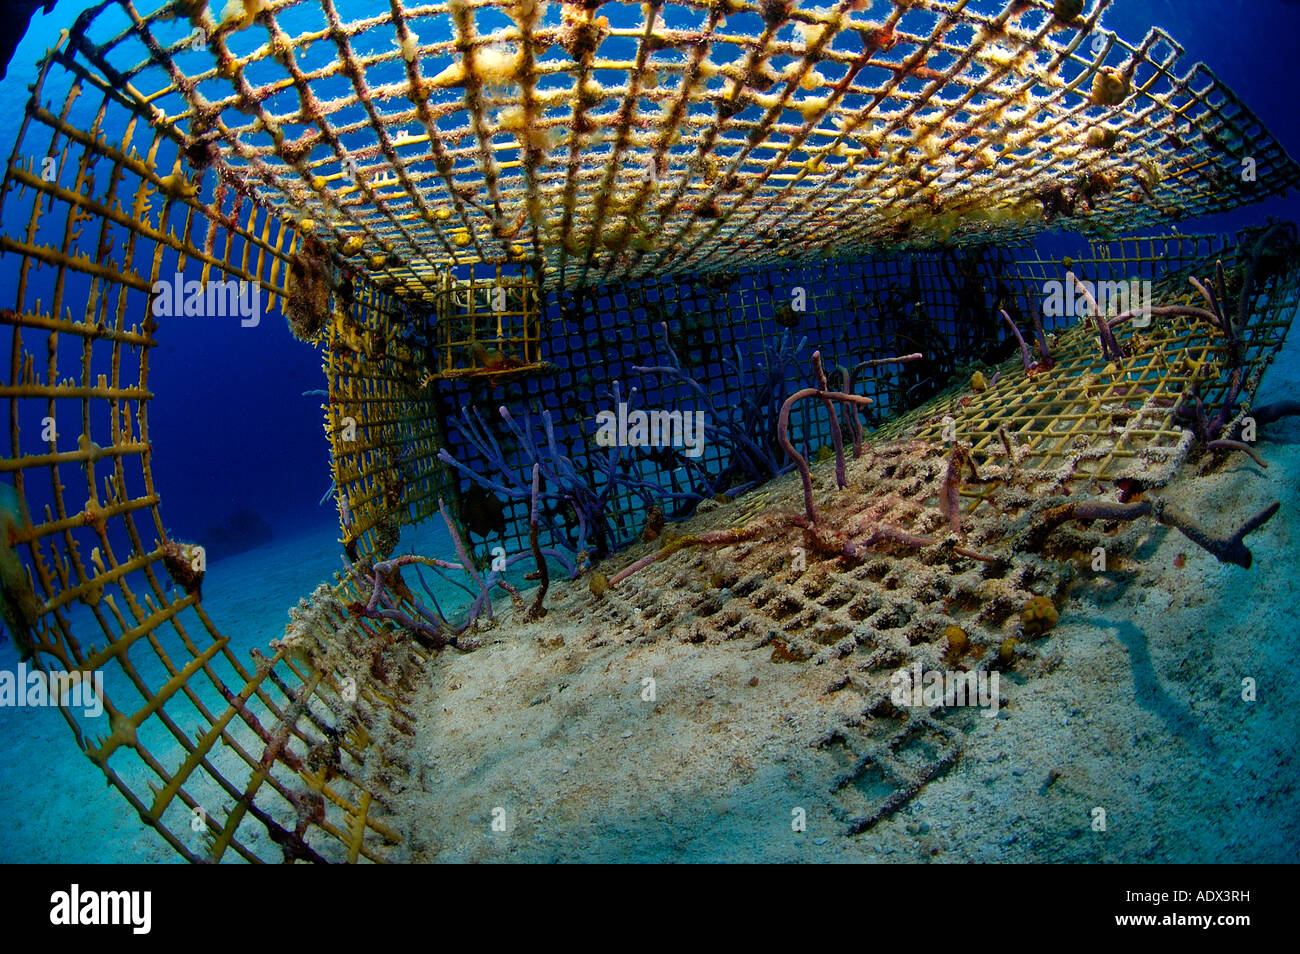 Trampa de peces cubierto con corales del Mar Caribe Islas Turks y Caicos Foto de stock